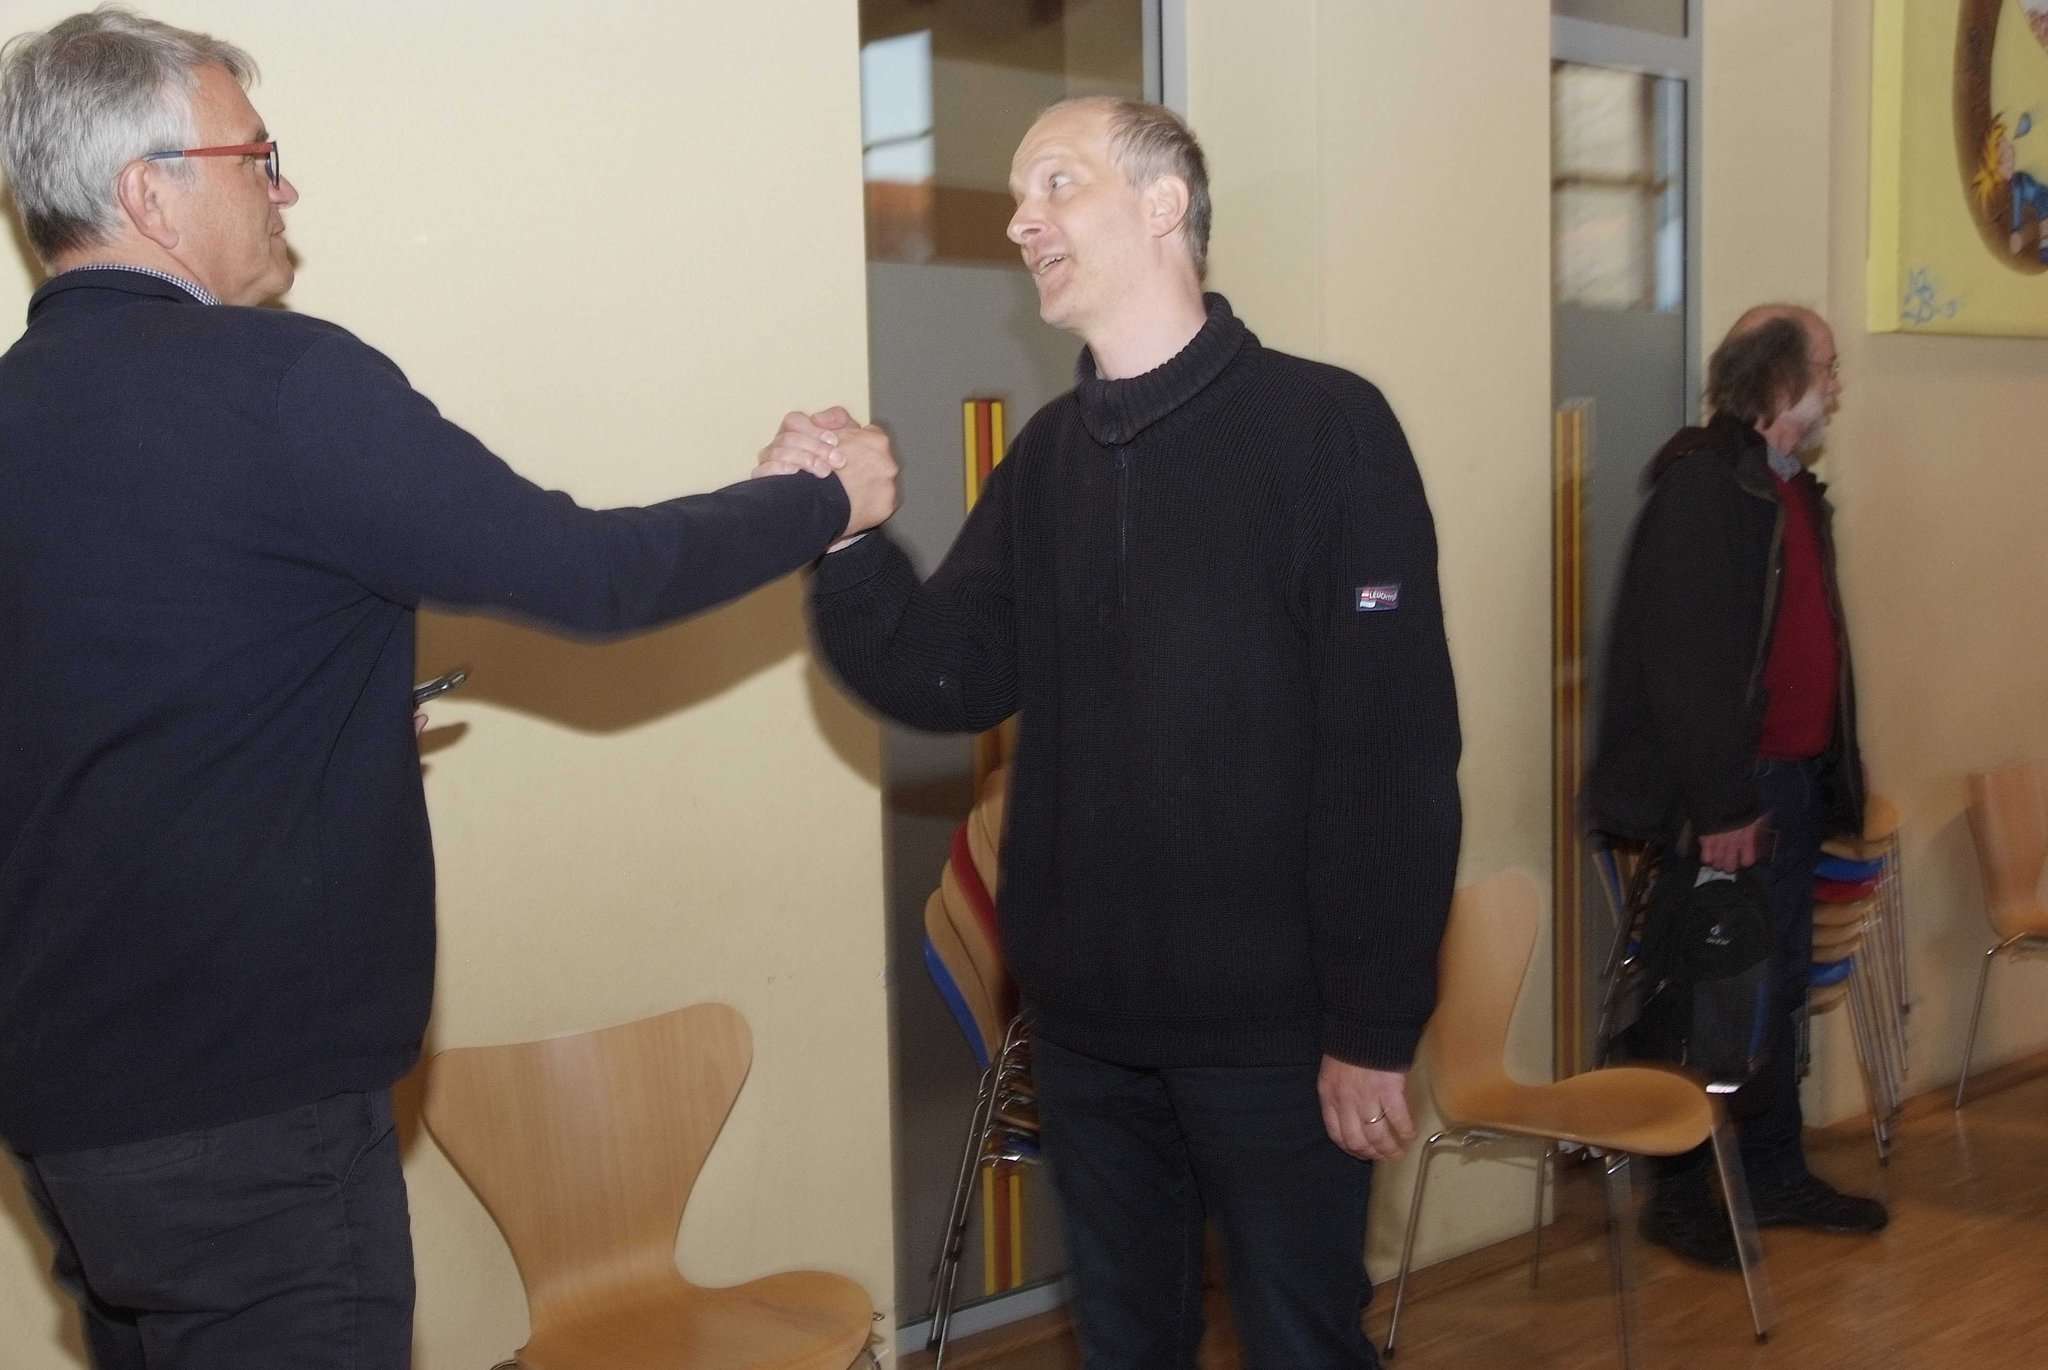 Der unterlegende Gegenkandidat Reiner Sterna (links) gratuliert dem zukünftigen Ottersberger Bürgermeister Tim Willy Weber. 
Foto: Tobias Woelki